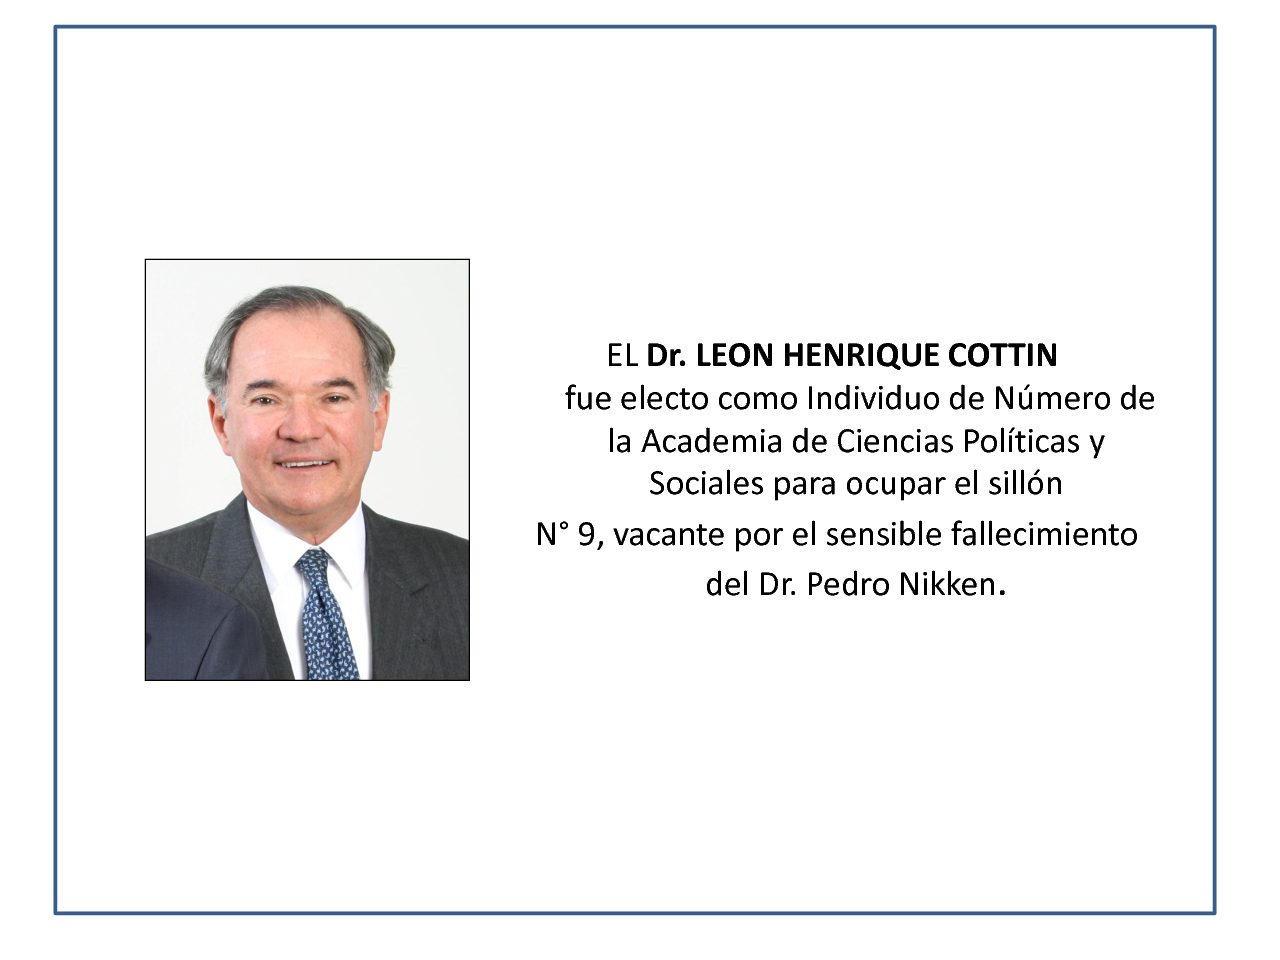 Dr. LEON HENRIQUE COTTIN electo como Individuo de Número de la Academia de Ciencias Políticas y Sociales